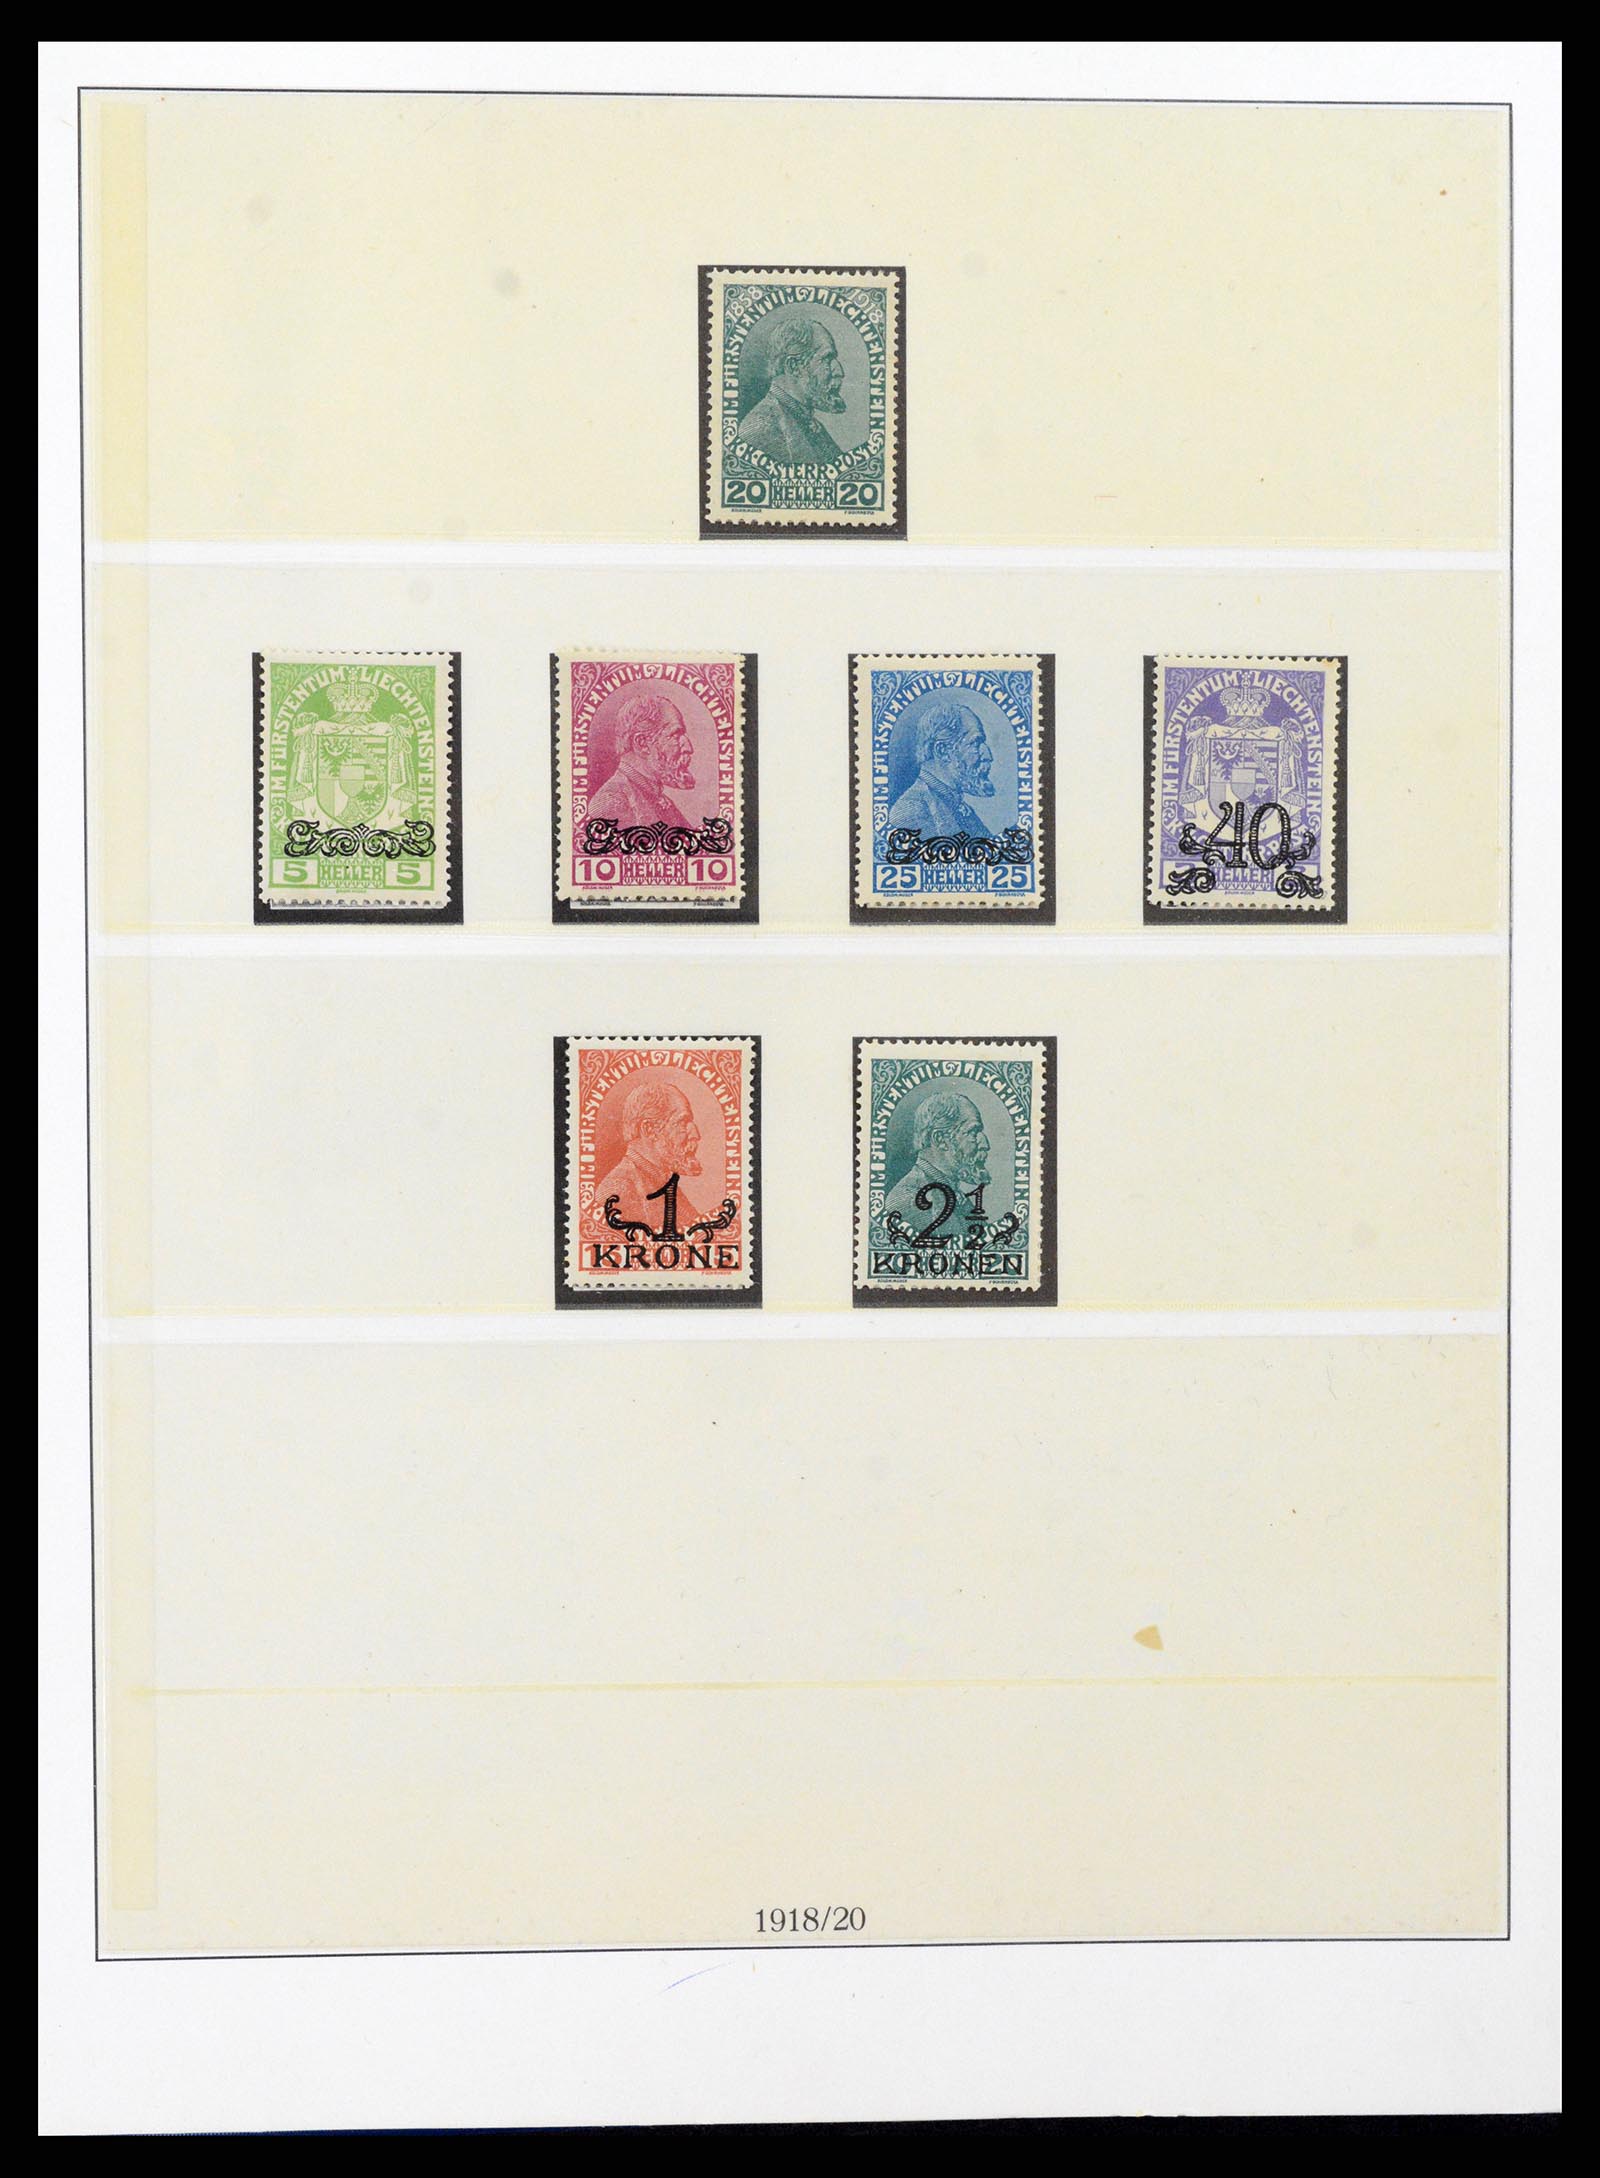 37295 002 - Stamp collection 37295 Liechtenstein 1912-2009.